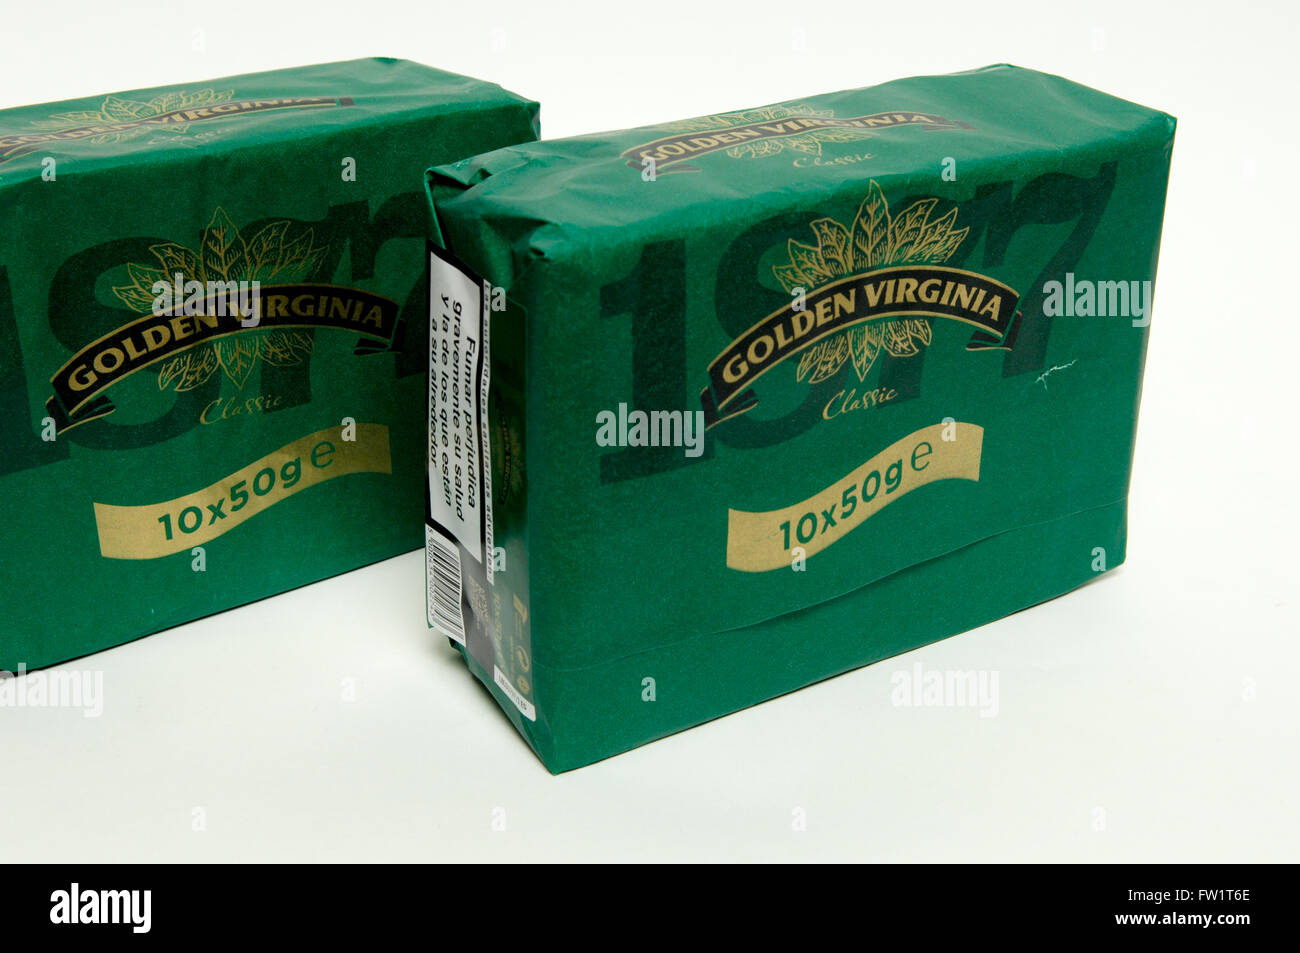 El tabaco Virginia oro 10 x 50g un paquete Fotografía de stock - Alamy